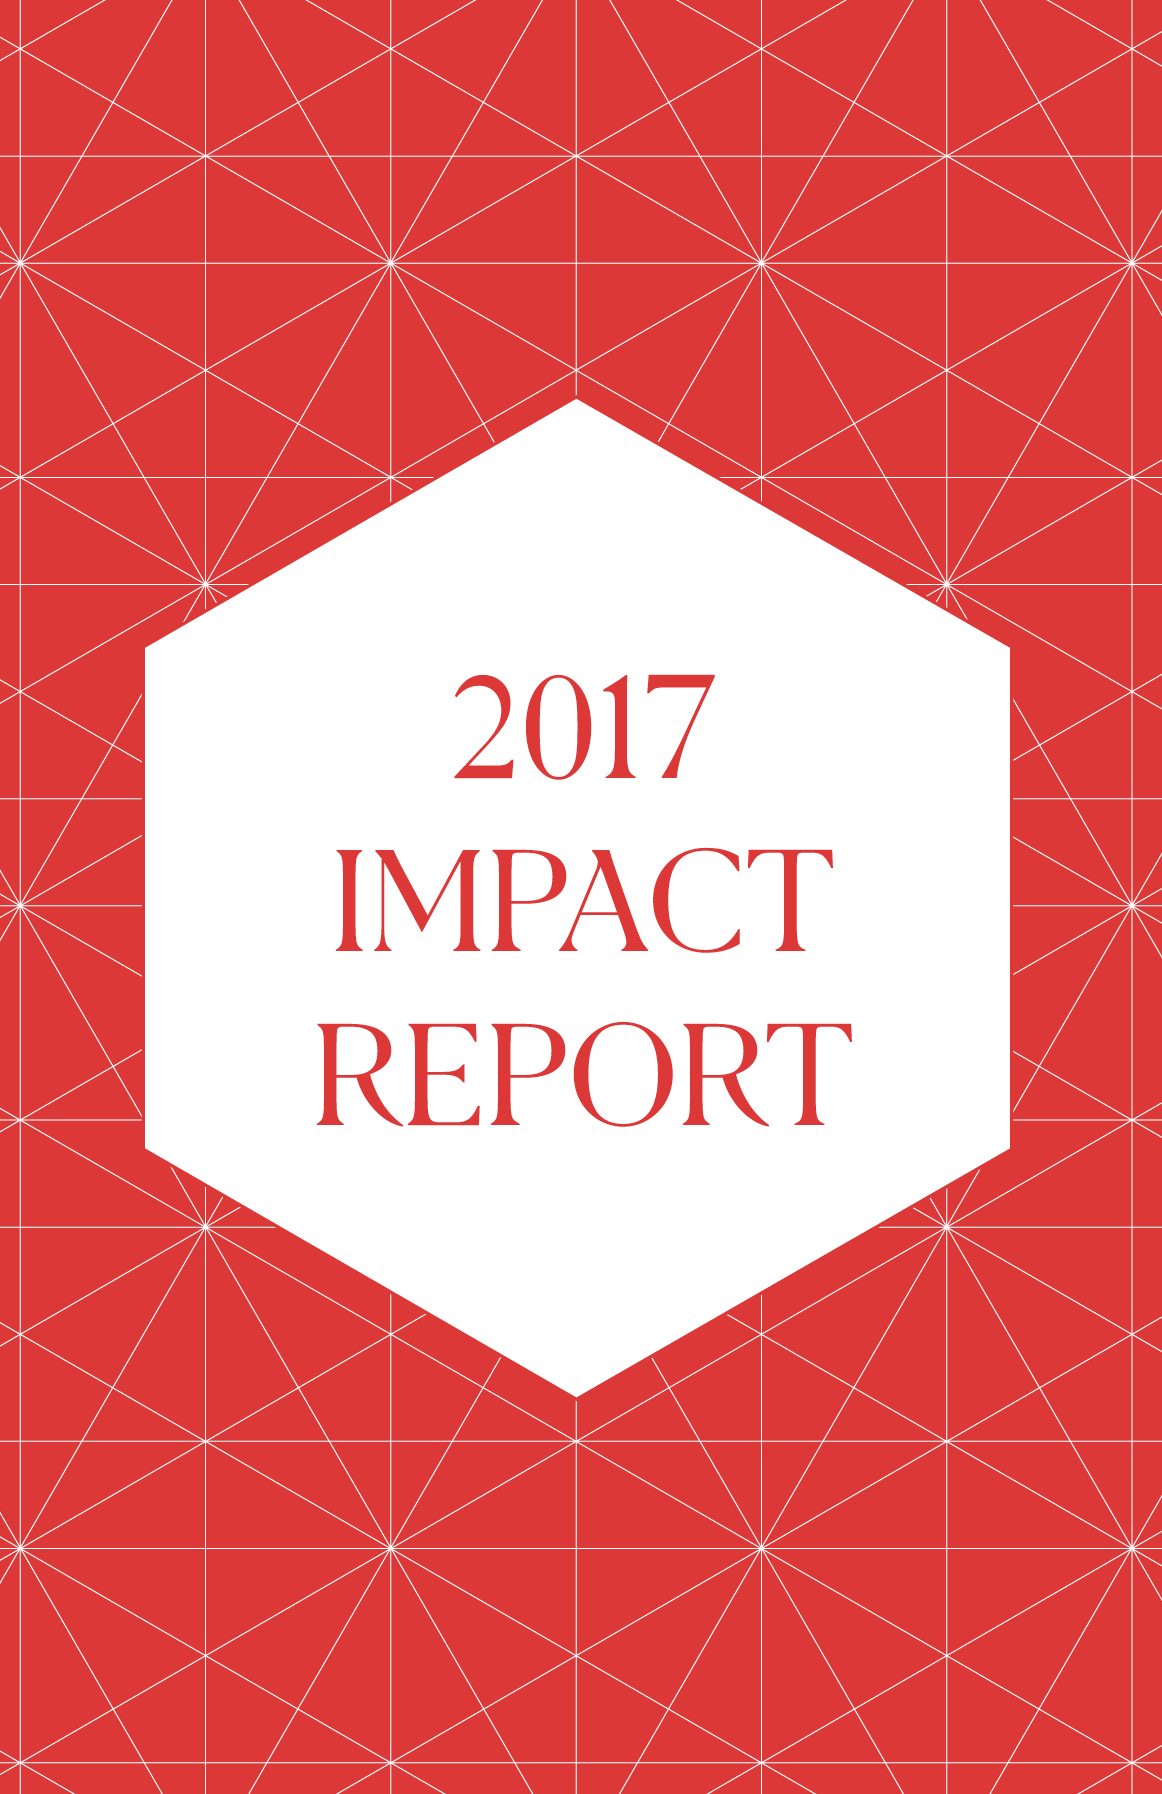 Rapporto d'impatto 2017